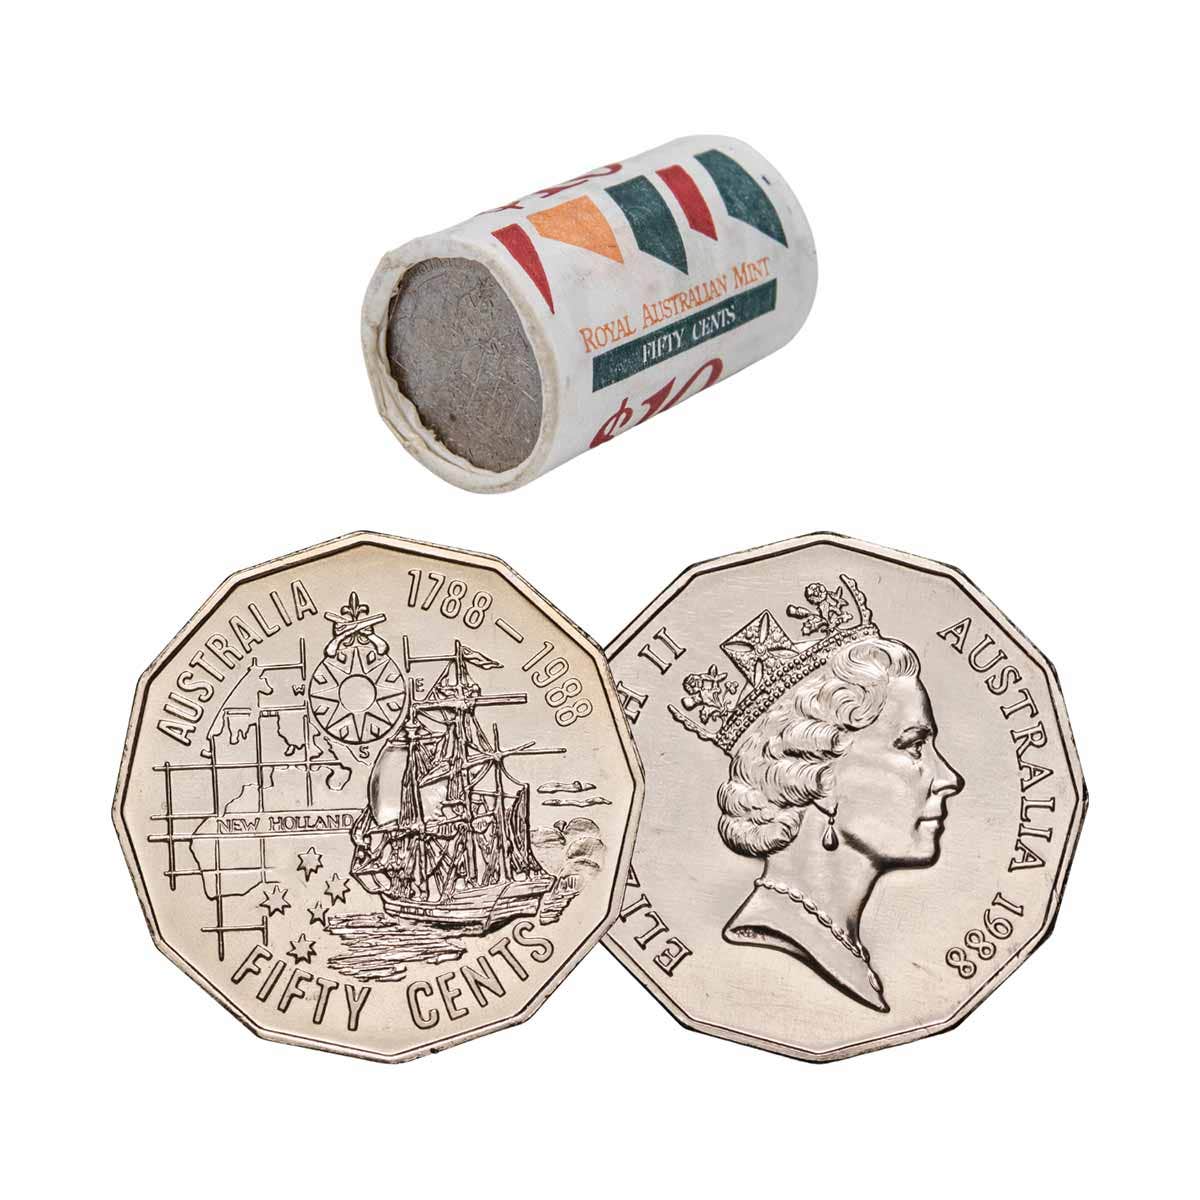 Australia Bicentennial 1988 50c Cupro-Nickel Uncirculated 20-Coin RAM Mint Roll